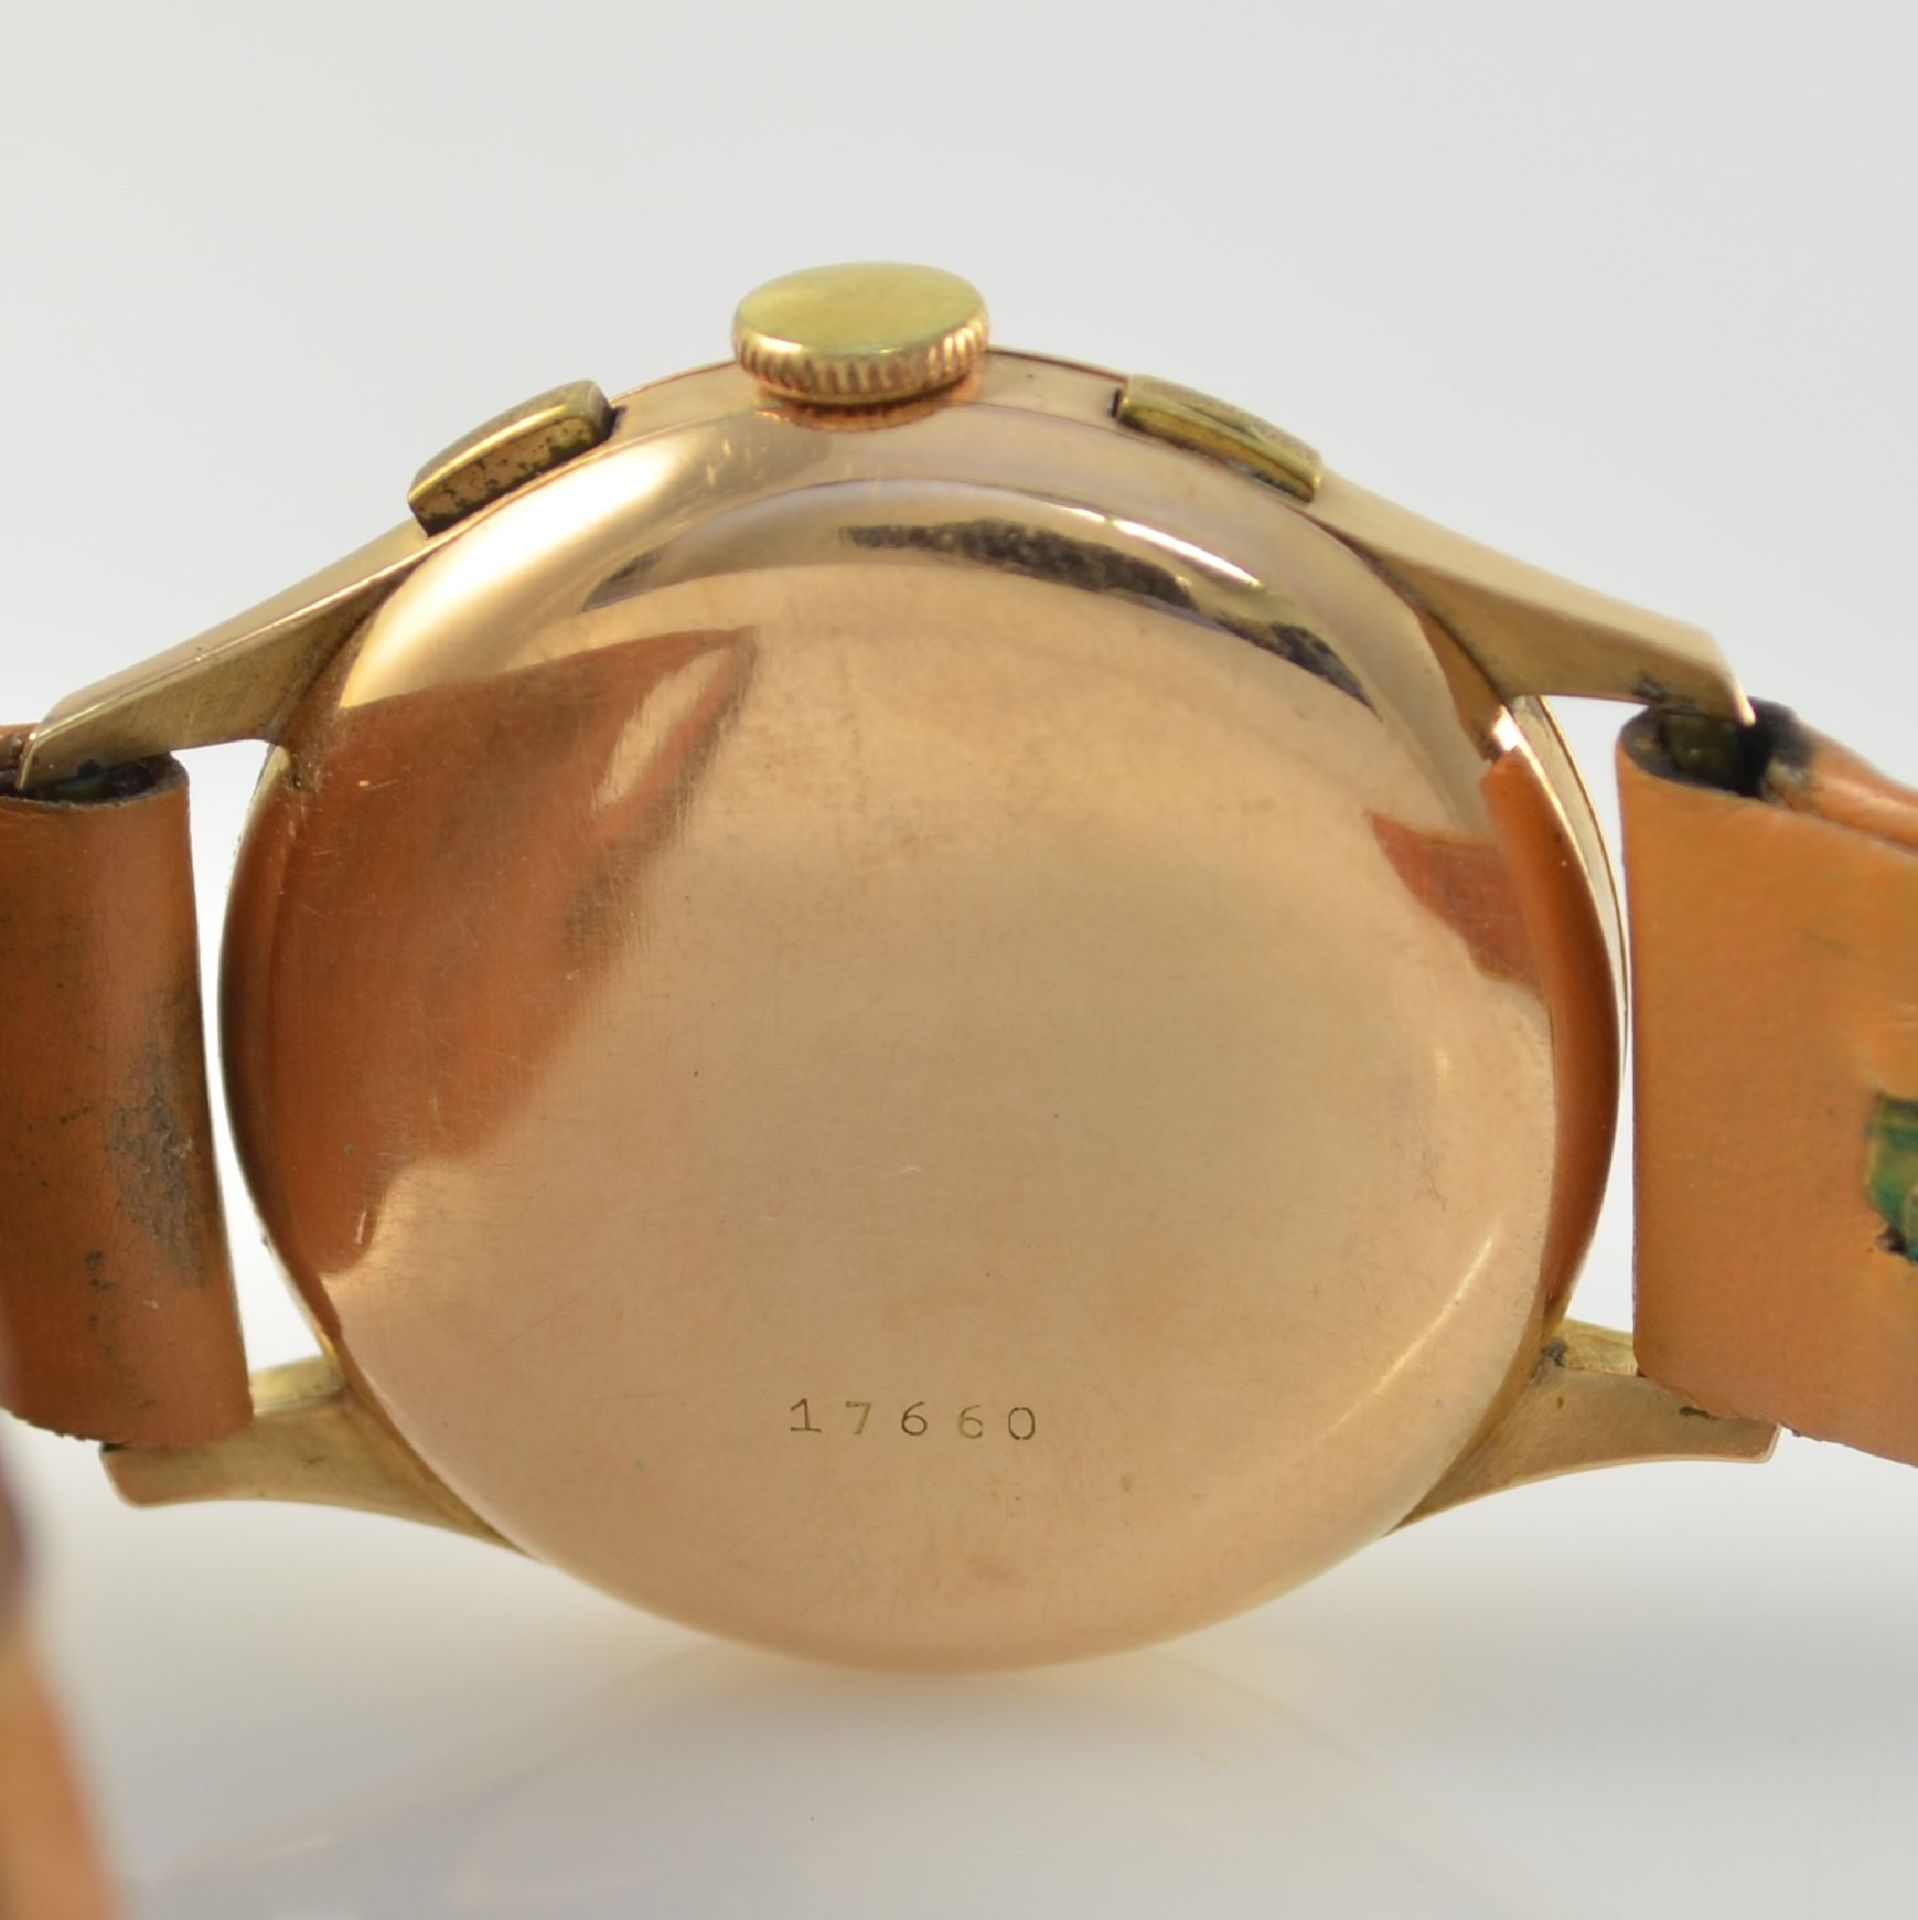 Armbandchronograph in RG 750/000, Schweiz um 1950, Handaufzug, Boden aufgedr., schwarzes Zifferbl. - Bild 6 aus 11